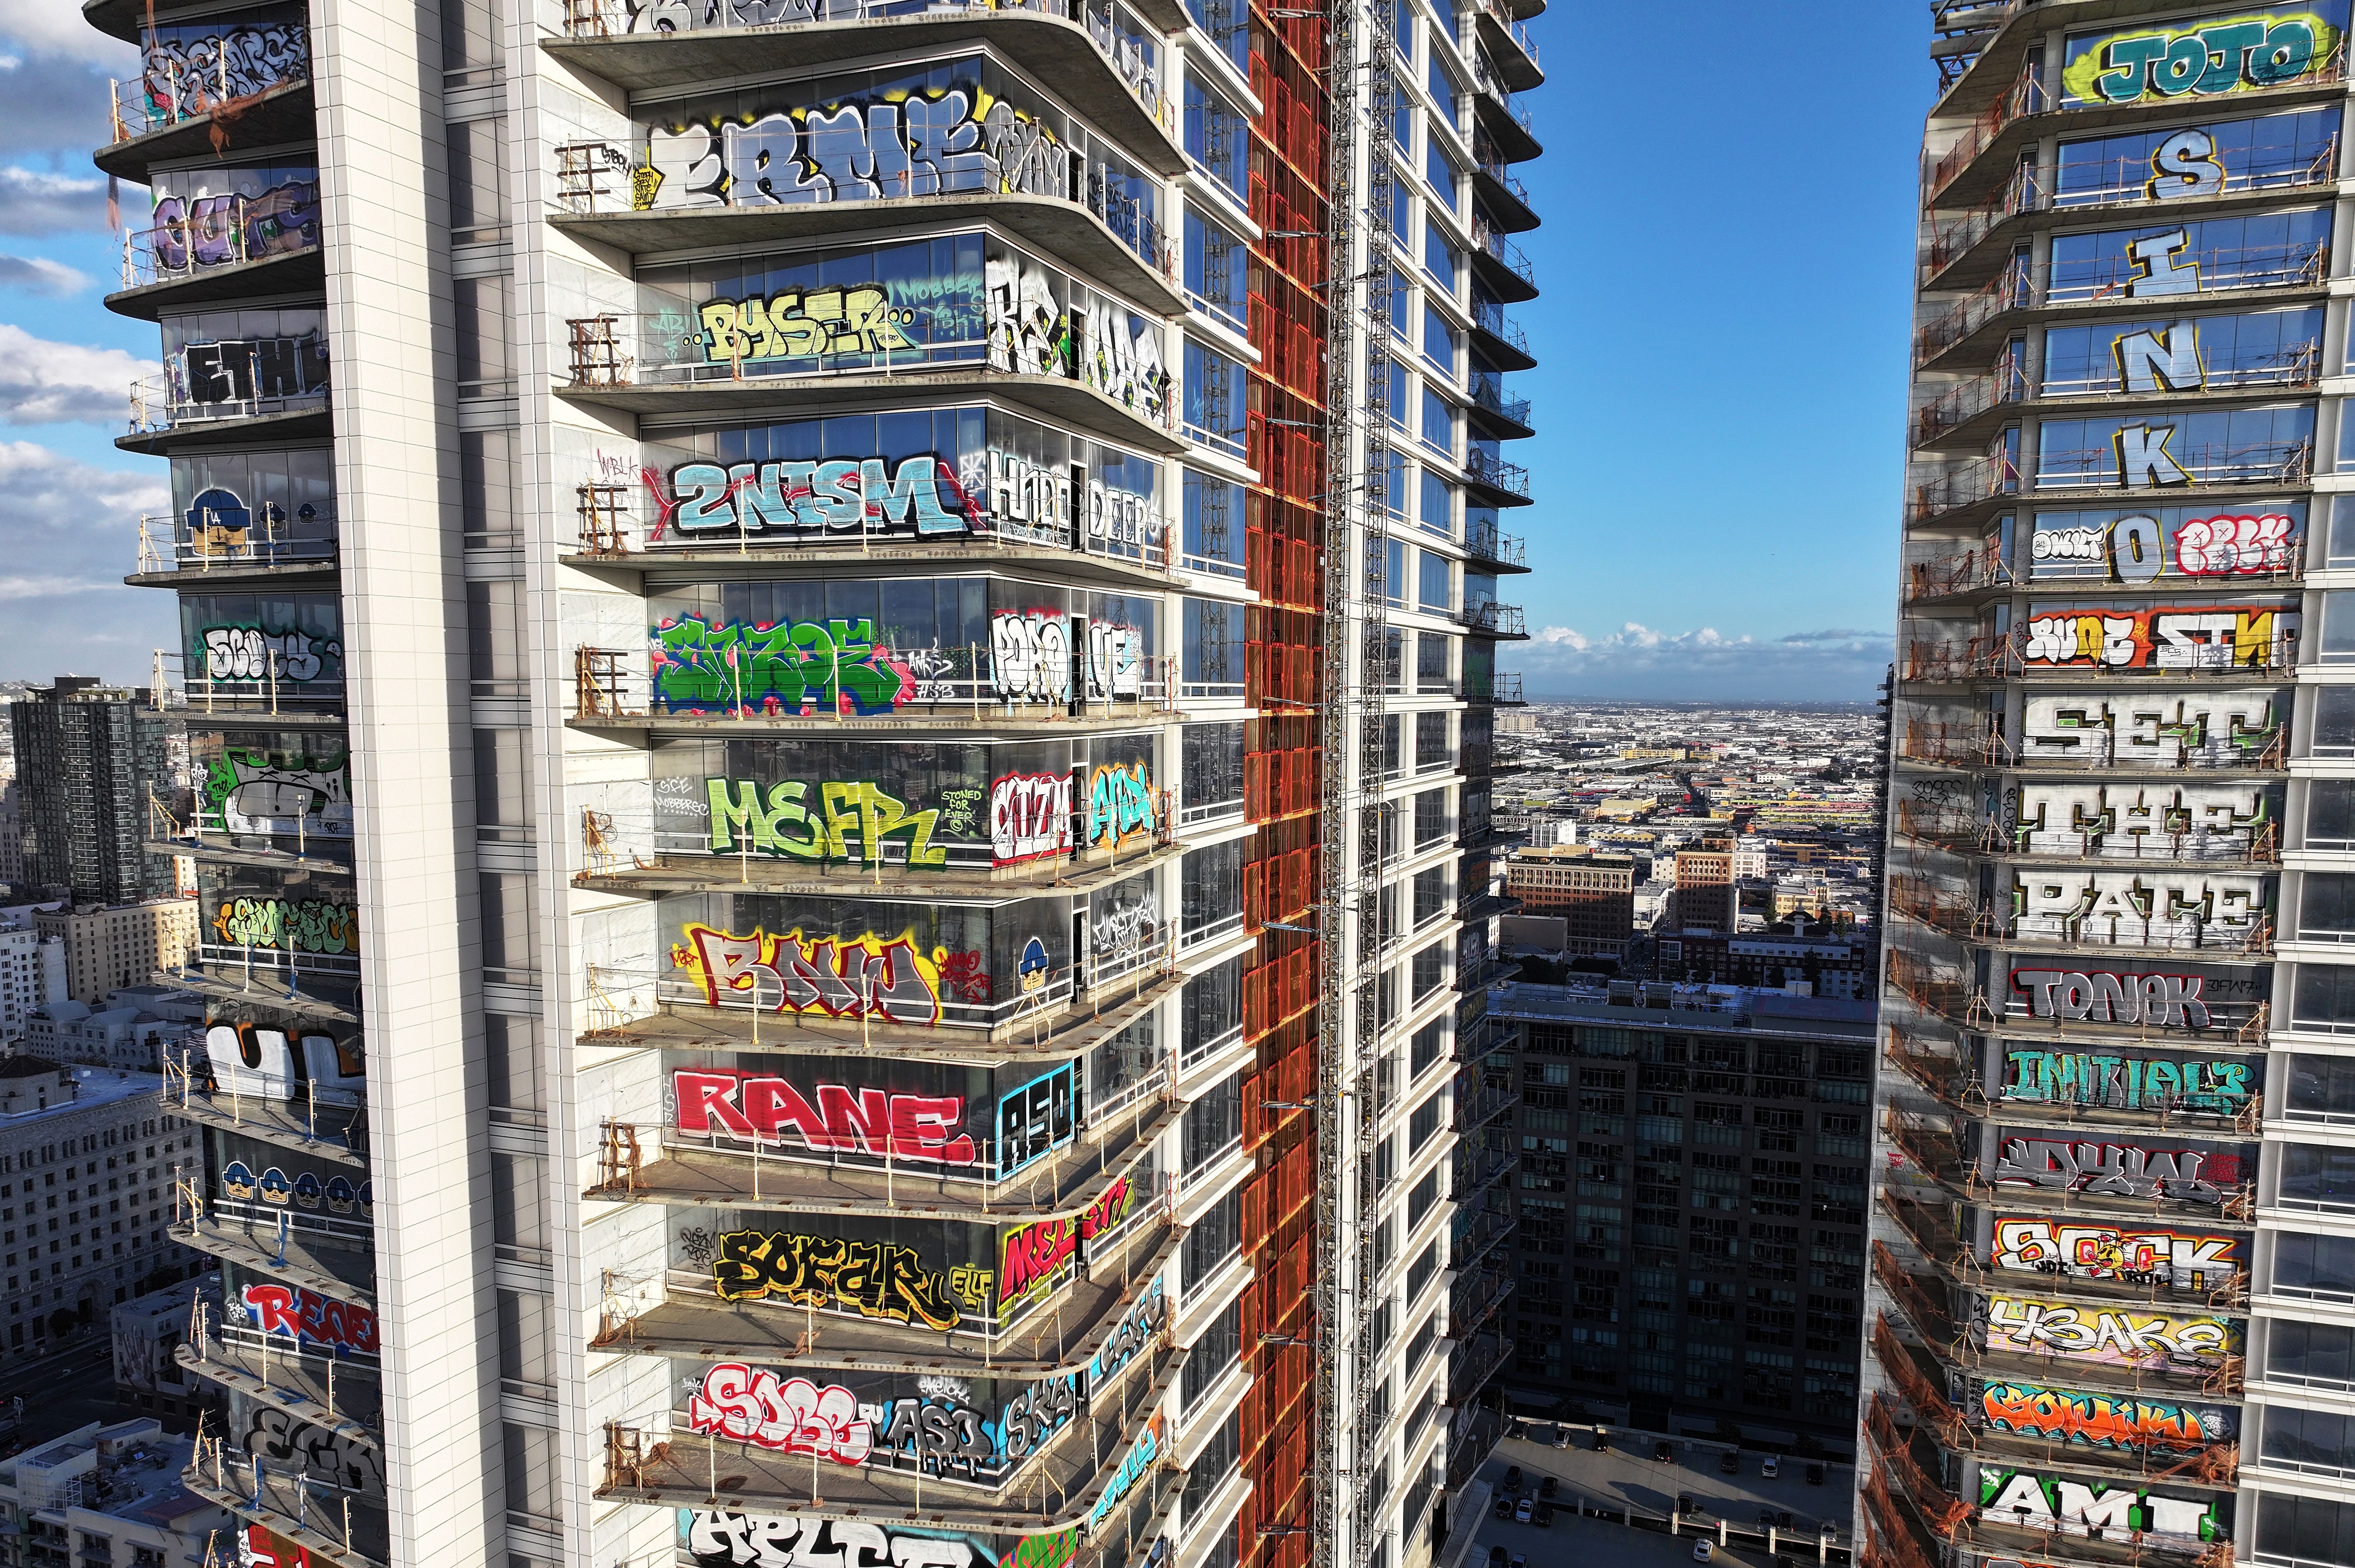 Skyscraper with graffiti